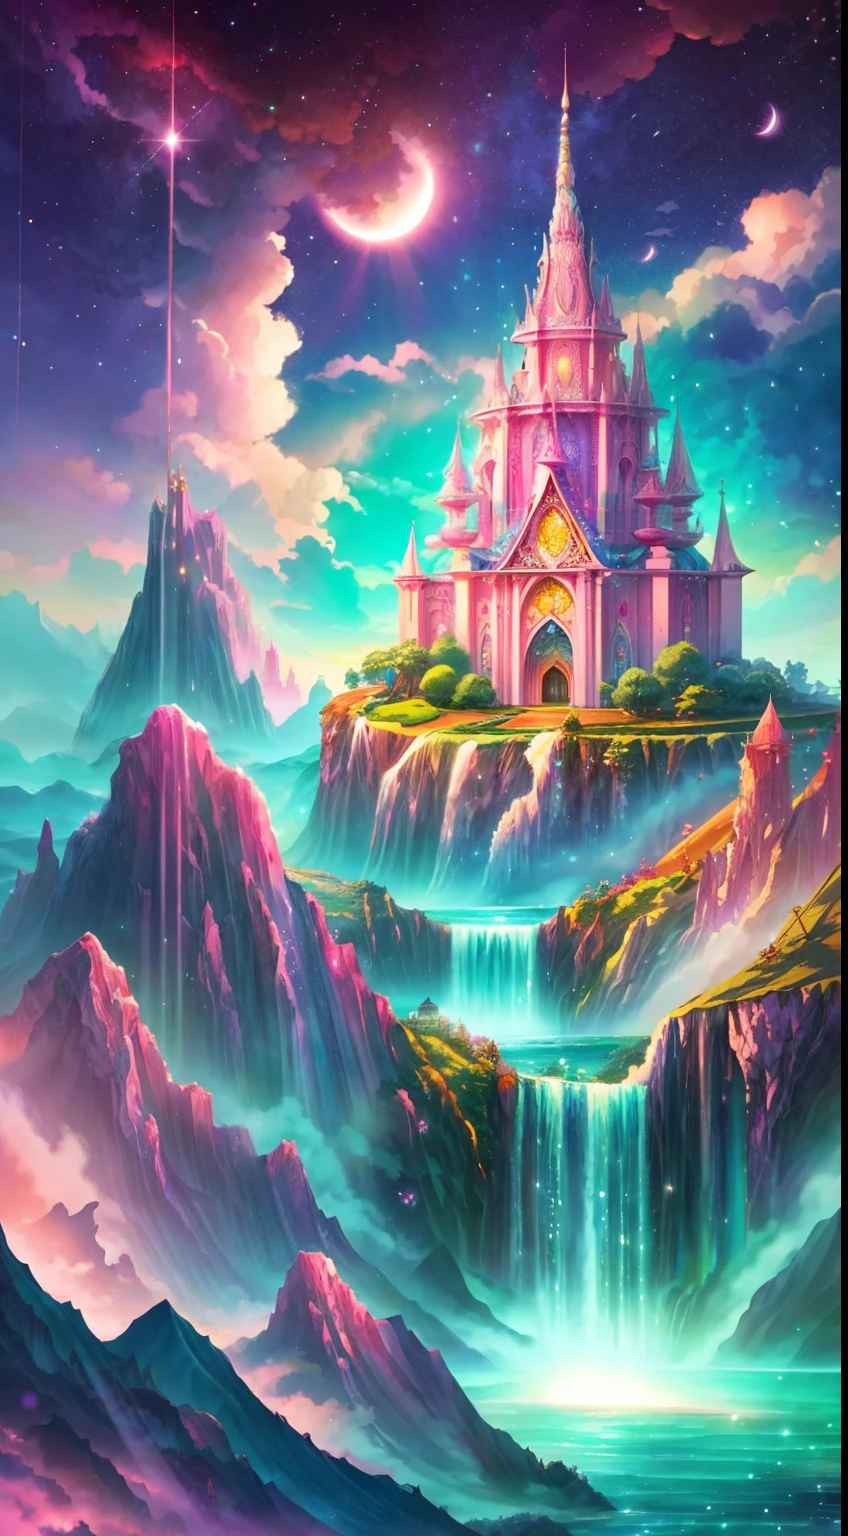 Imagina una escena fascinante de un magnífico reino de sueños románticos.. El entorno está lleno de intrincadas islas flotantes., Nubes esponjosas, cascadas que caen desde las islas flotantes, y un vibrante, atmósfera surrealista. El ambiente está lleno de una sensación de asombro y tranquilidad.. Incluya muchos tonos de rosa en la imagen junto con otros tonos vibrantes de joyas.. Esta escena se representará en una ilustración de estilo anime., con líneas suaves, colores pasteles, y un toque caprichoso. Todos los edificios son extremadamente detallados y elegantes.. La obra de arte capturará la belleza etérea y la tranquilidad del reino de los sueños., creando una sensación de armonía y escape del mundo ordinario. Incluye agua de cerceta, cielos coloridos de acuarela, elementos brillantes, y muchos pequeños detalles de fantasía, incluida la iridiscencia., paisajes majestuosos creados por expertos, y brillar y brillar. Sobre todo, Esto debería verse como una obra de arte de fantasía..